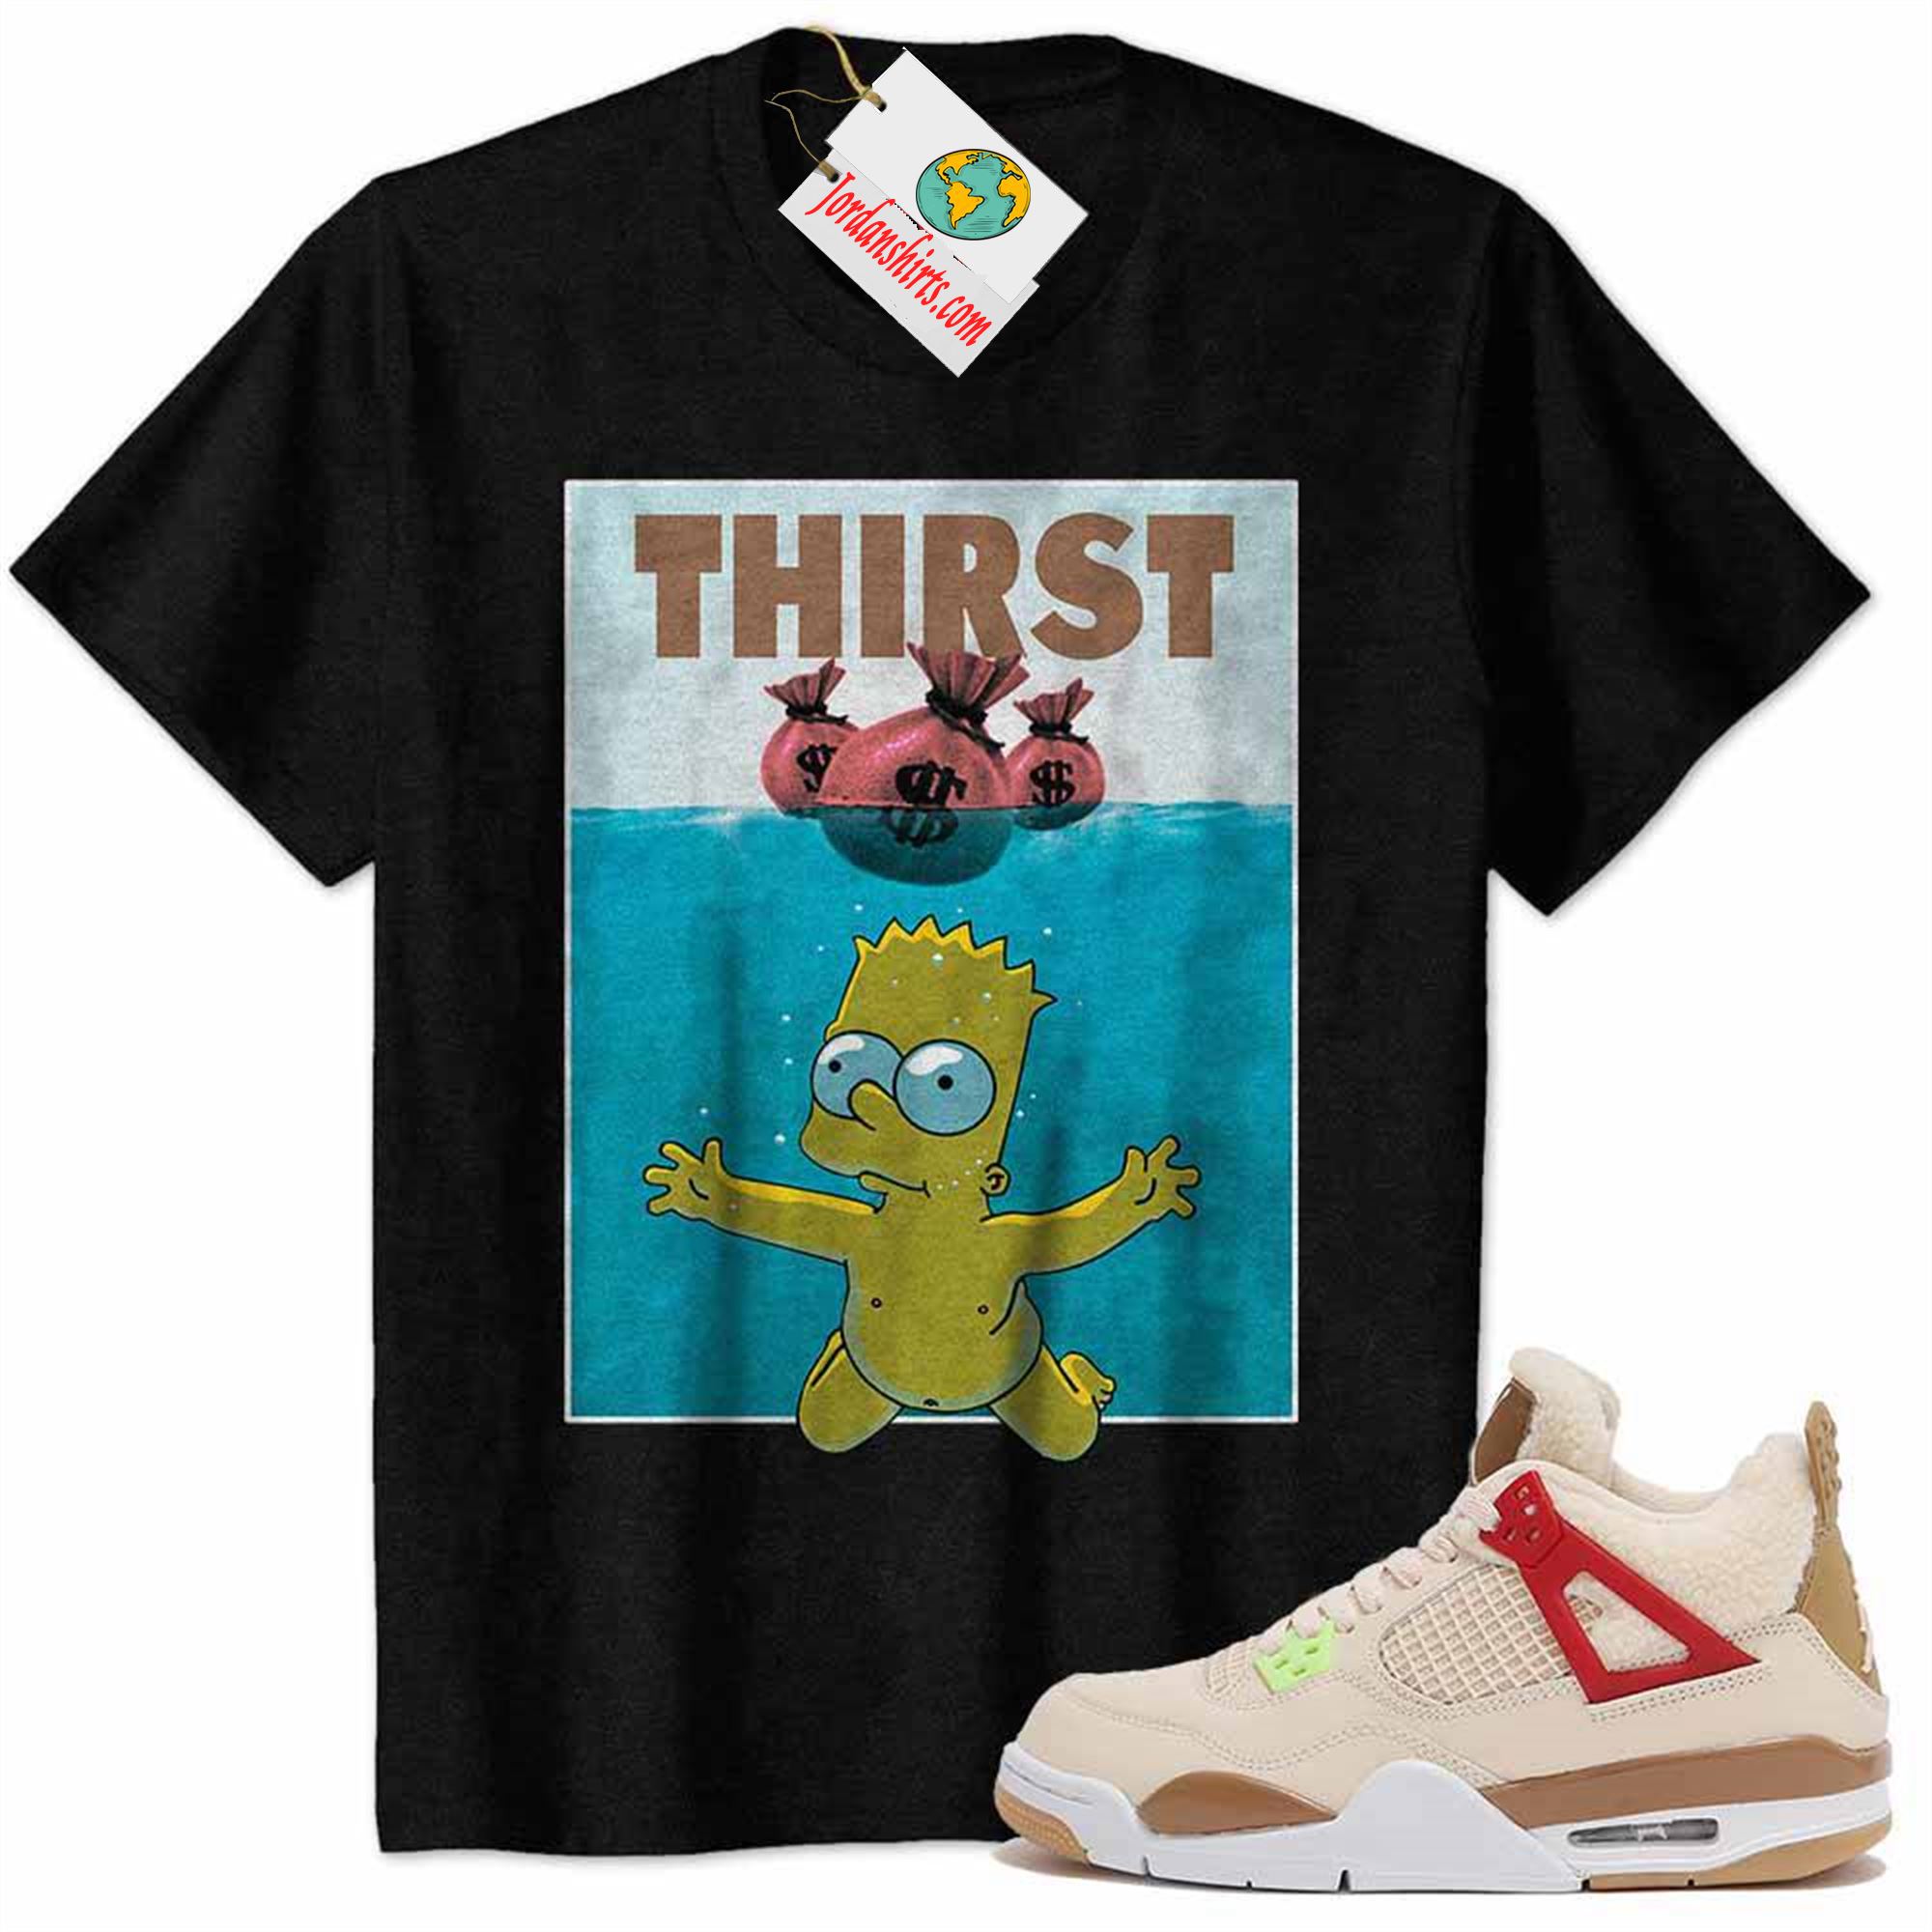 Jordan 4 Shirt, Bart Simpson Jaw Thirst Money Bag Black Air Jordan 4 Wild Things 4s Plus Size Up To 5xl